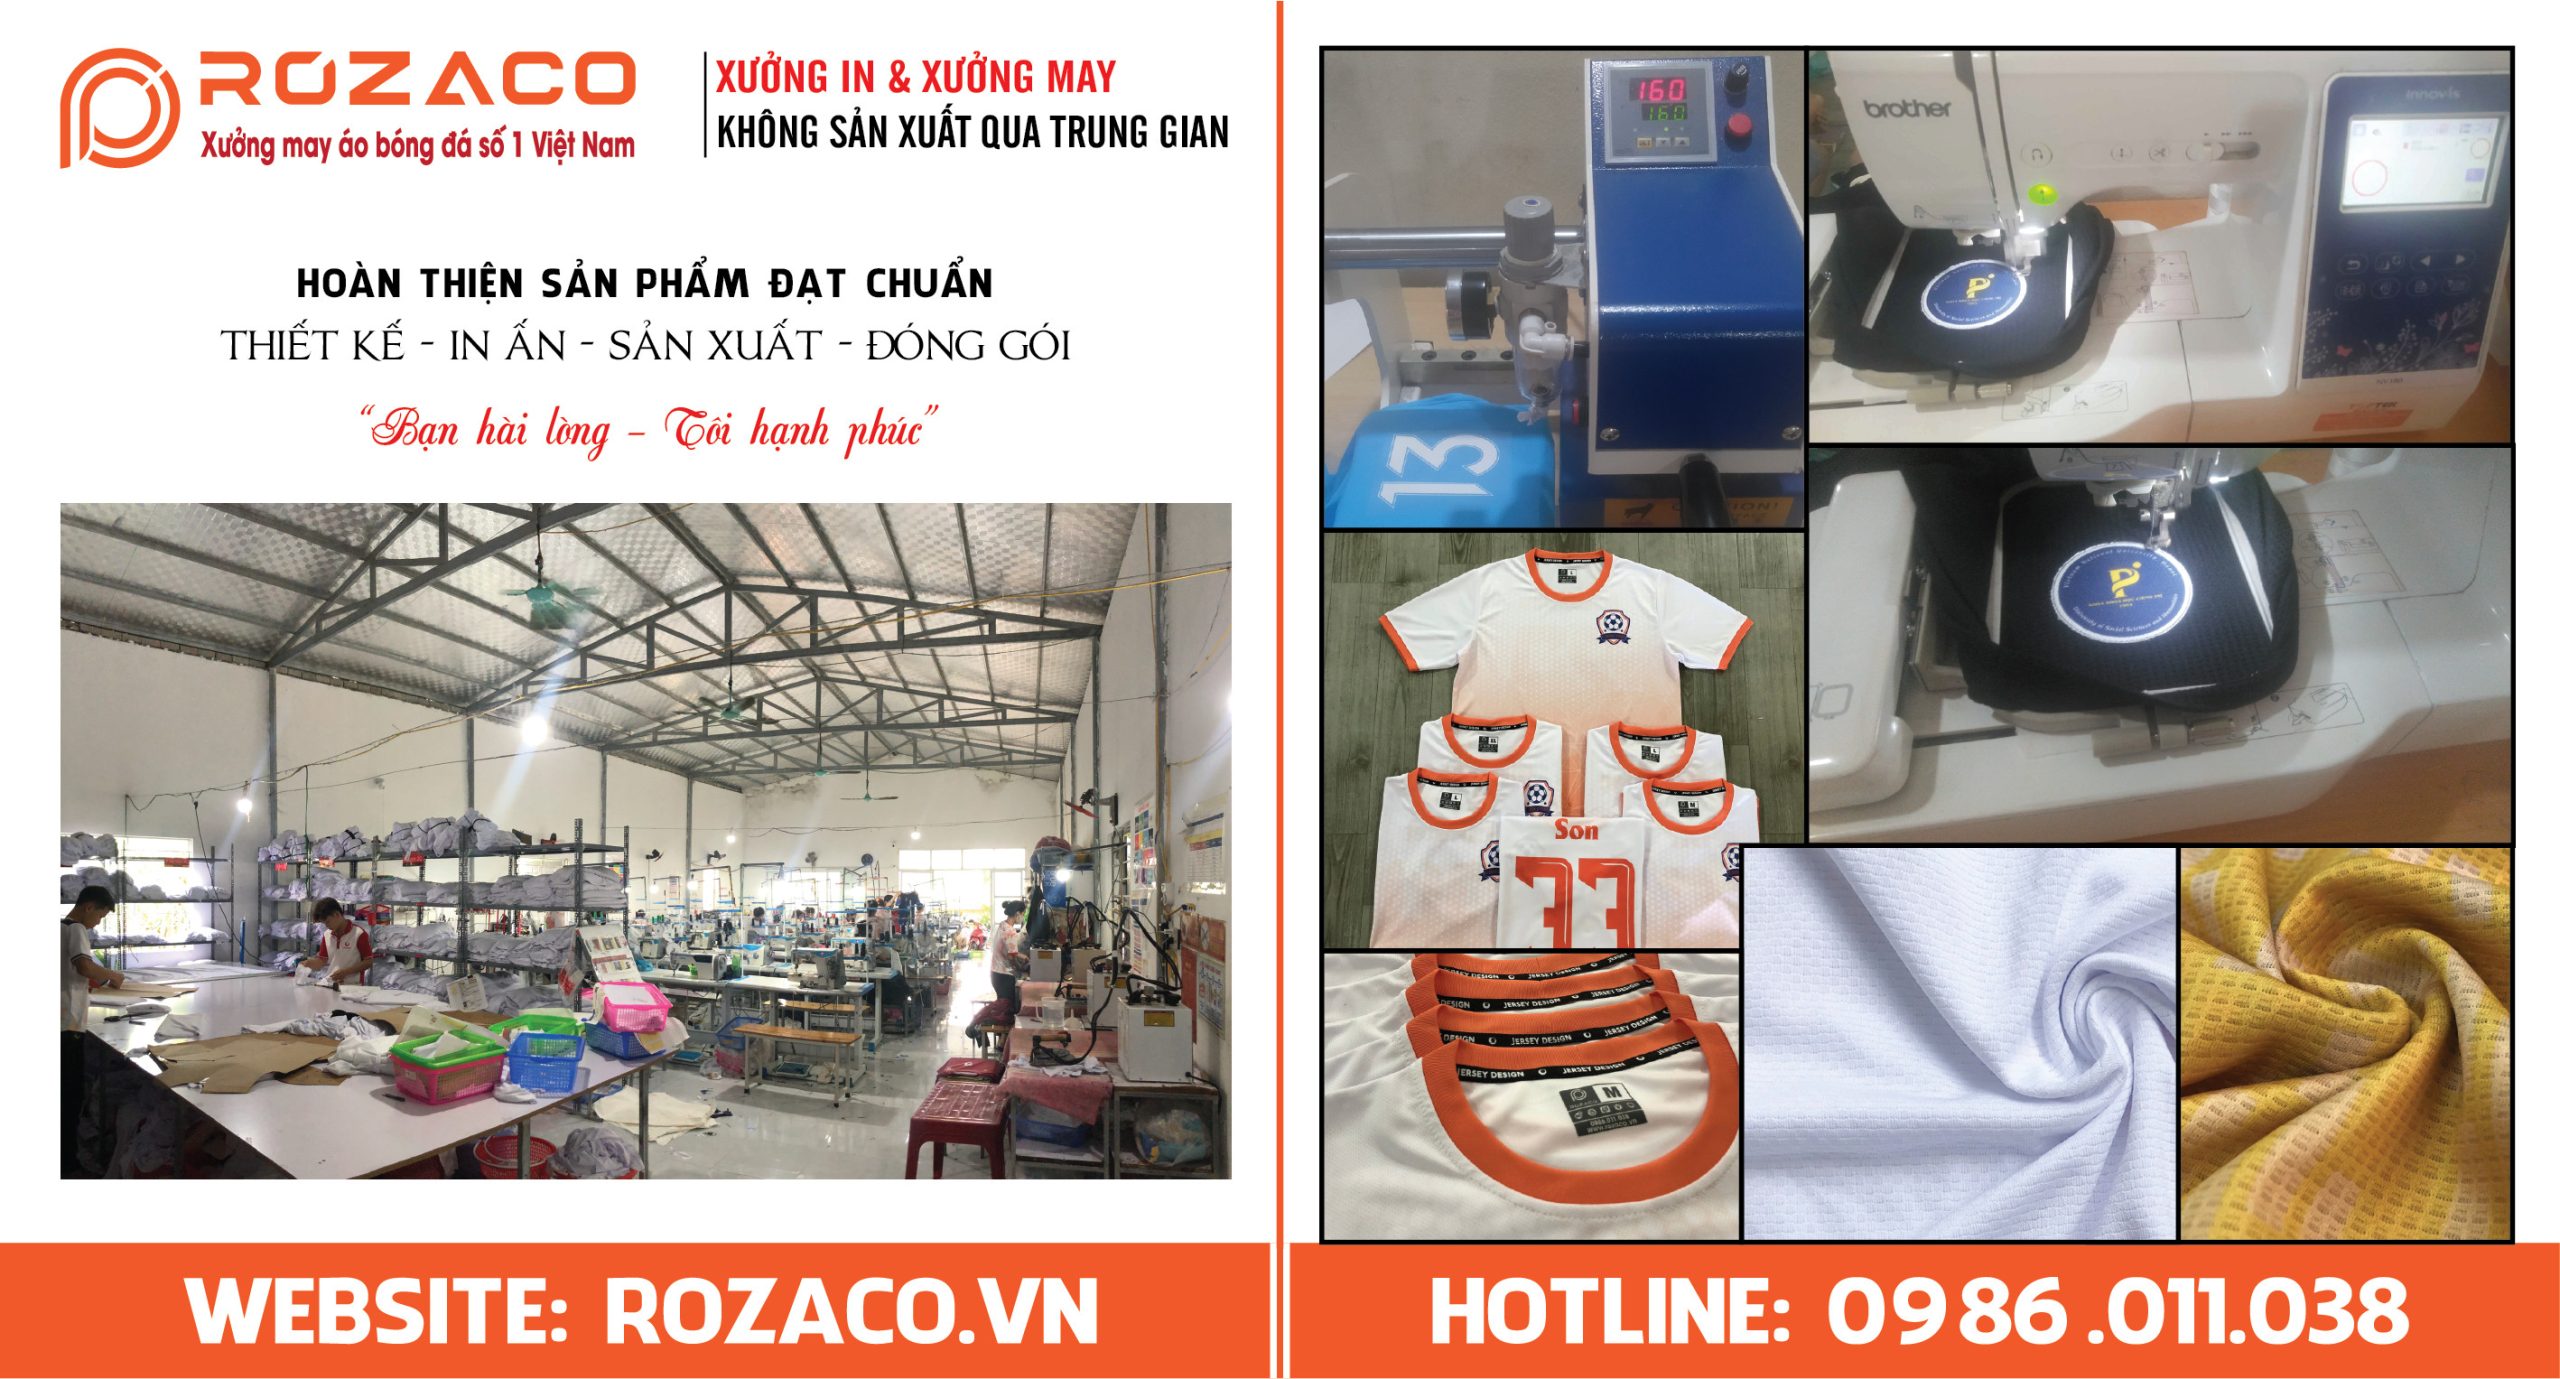 Xưởng may Rozaco - Địa chỉ may đồ thể thao số 1 Việt Nam